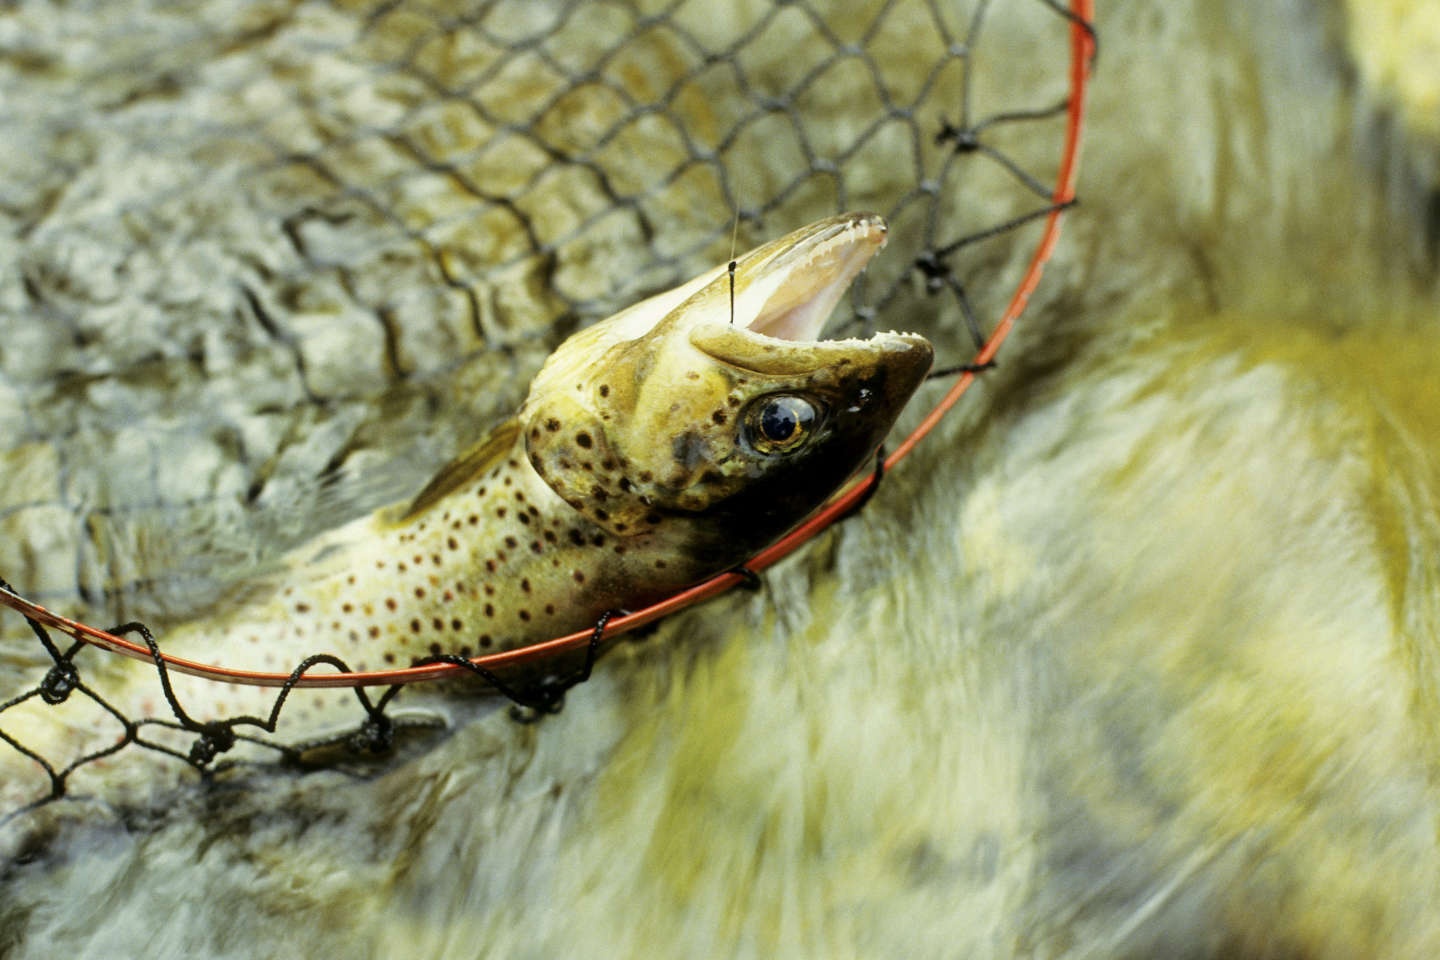 Pêche de loisir : « Une réglementation permettant de réduire la souffrance des poissons est indispensable »